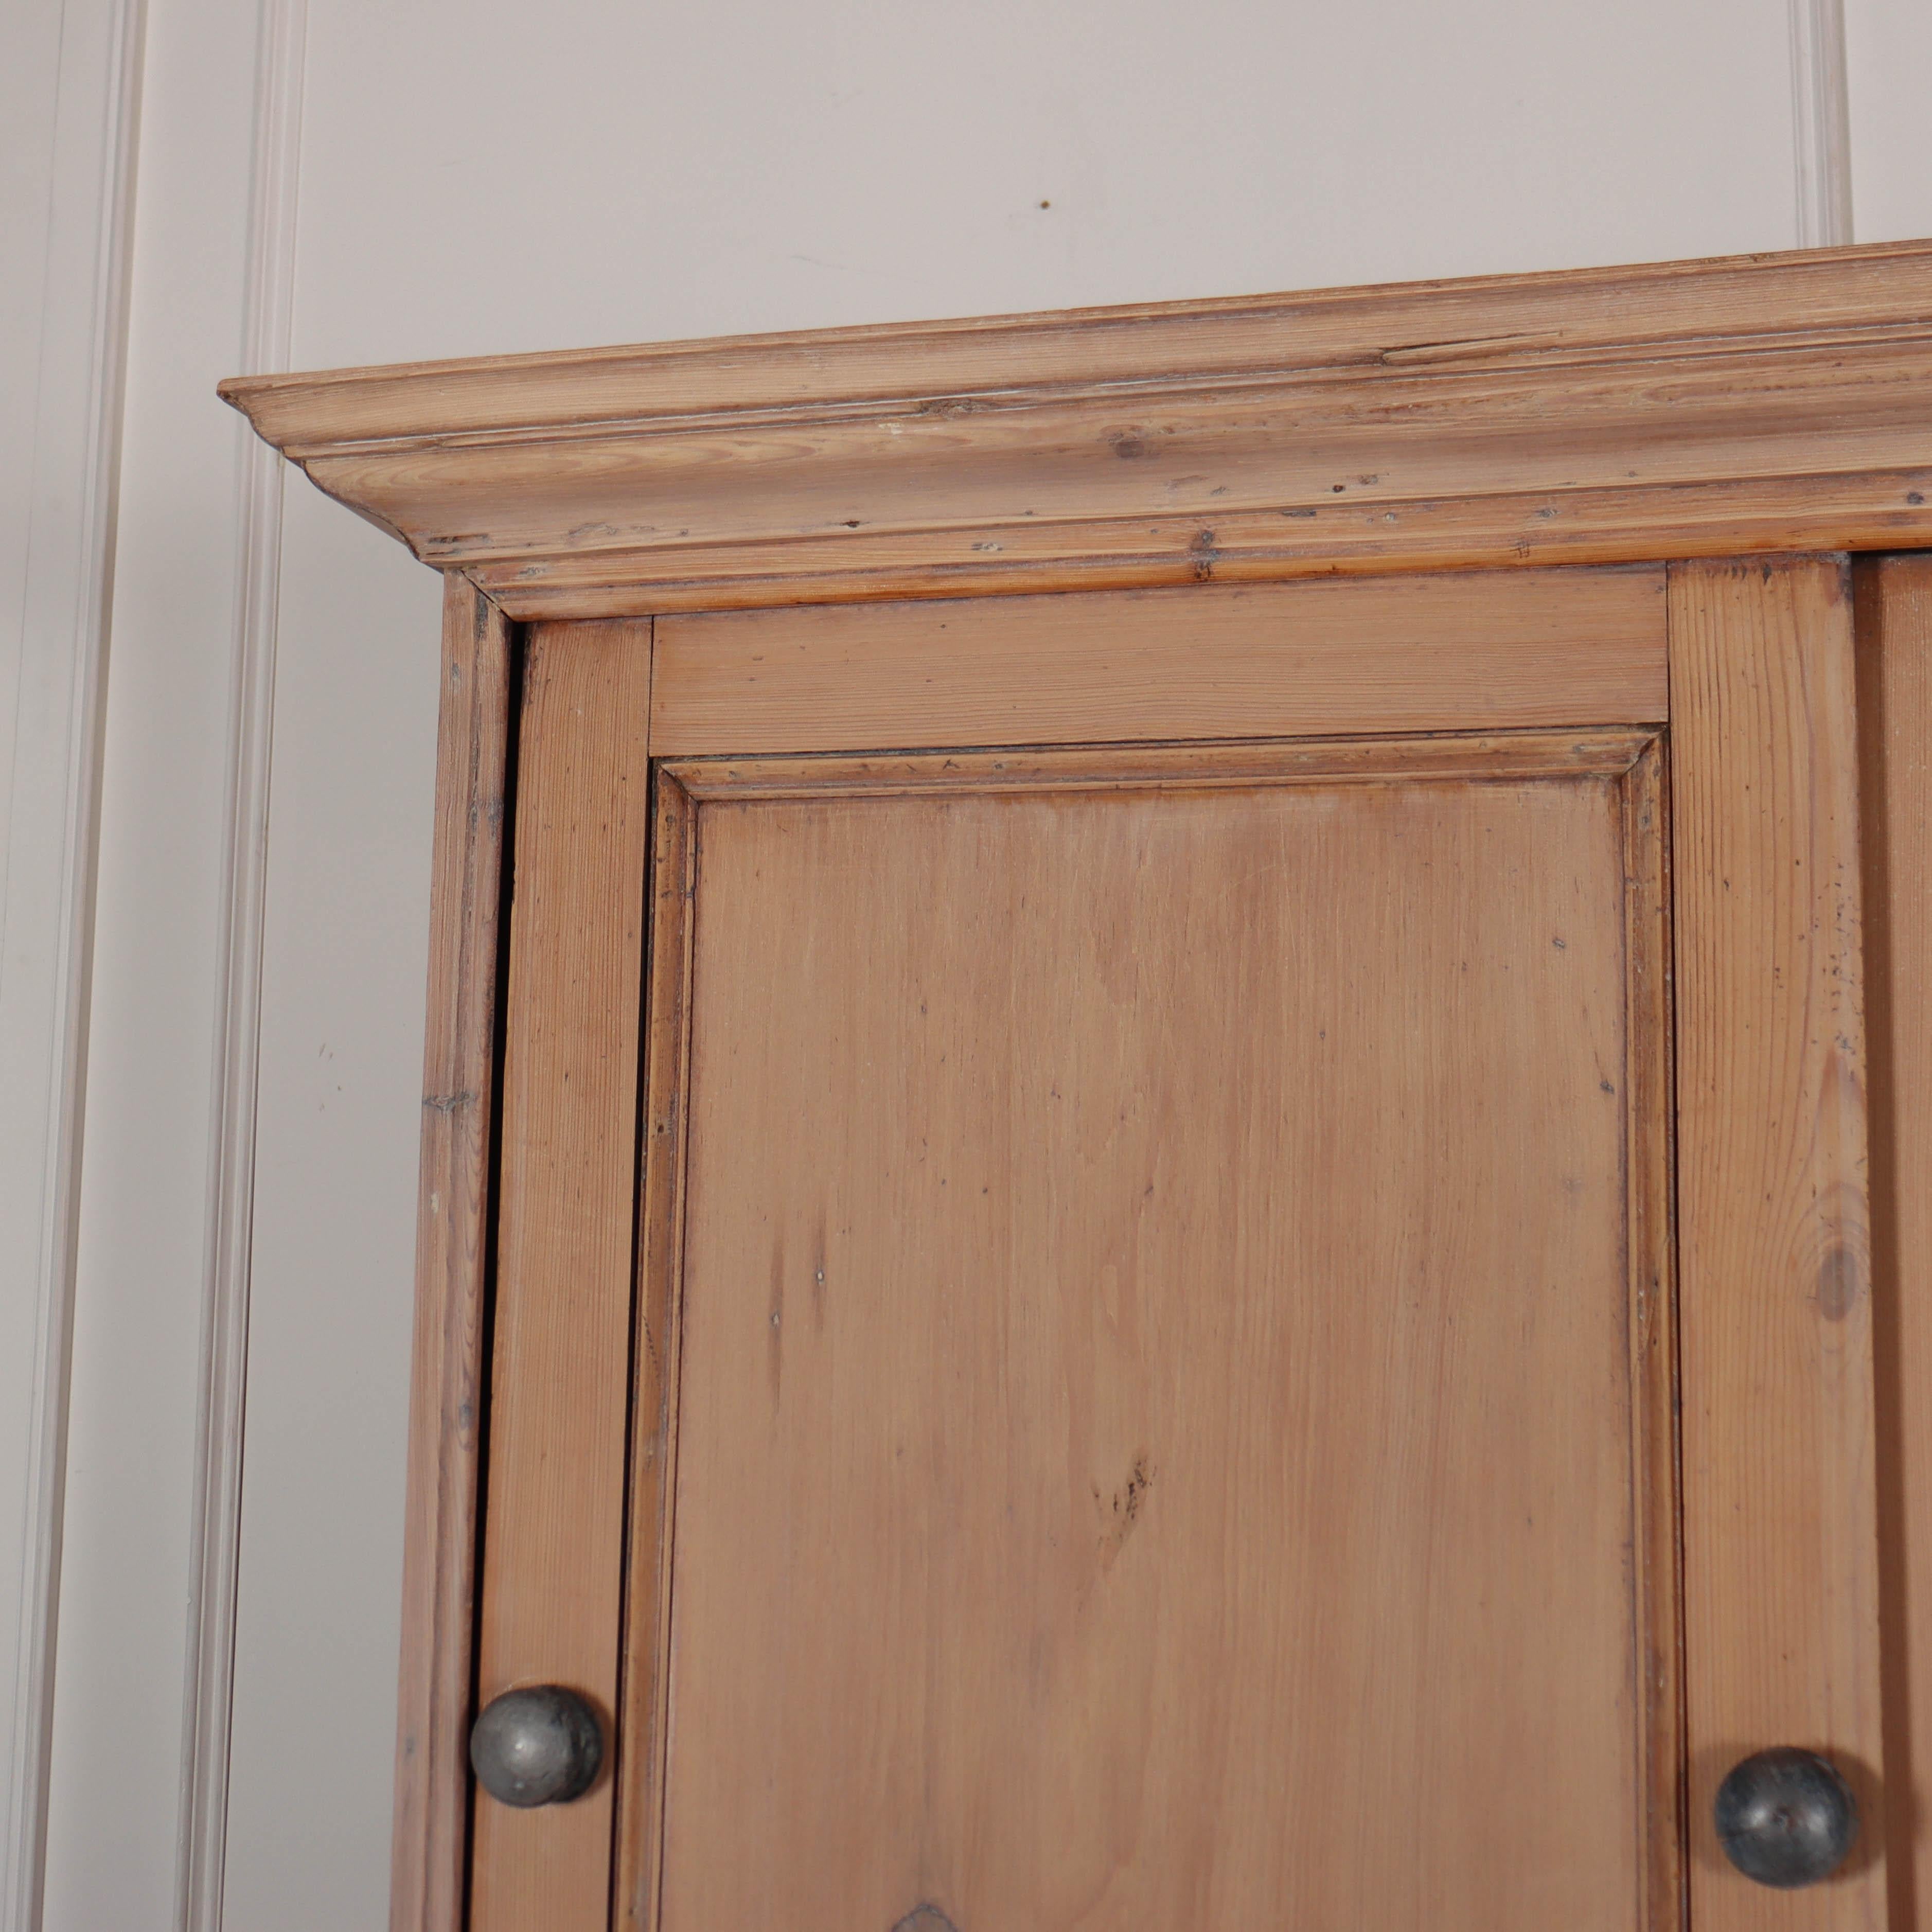 Armoire de ménage en pin blanchi du début du 19ème siècle avec portes coulissantes. 1840.

La profondeur interne du plateau est de 12,5